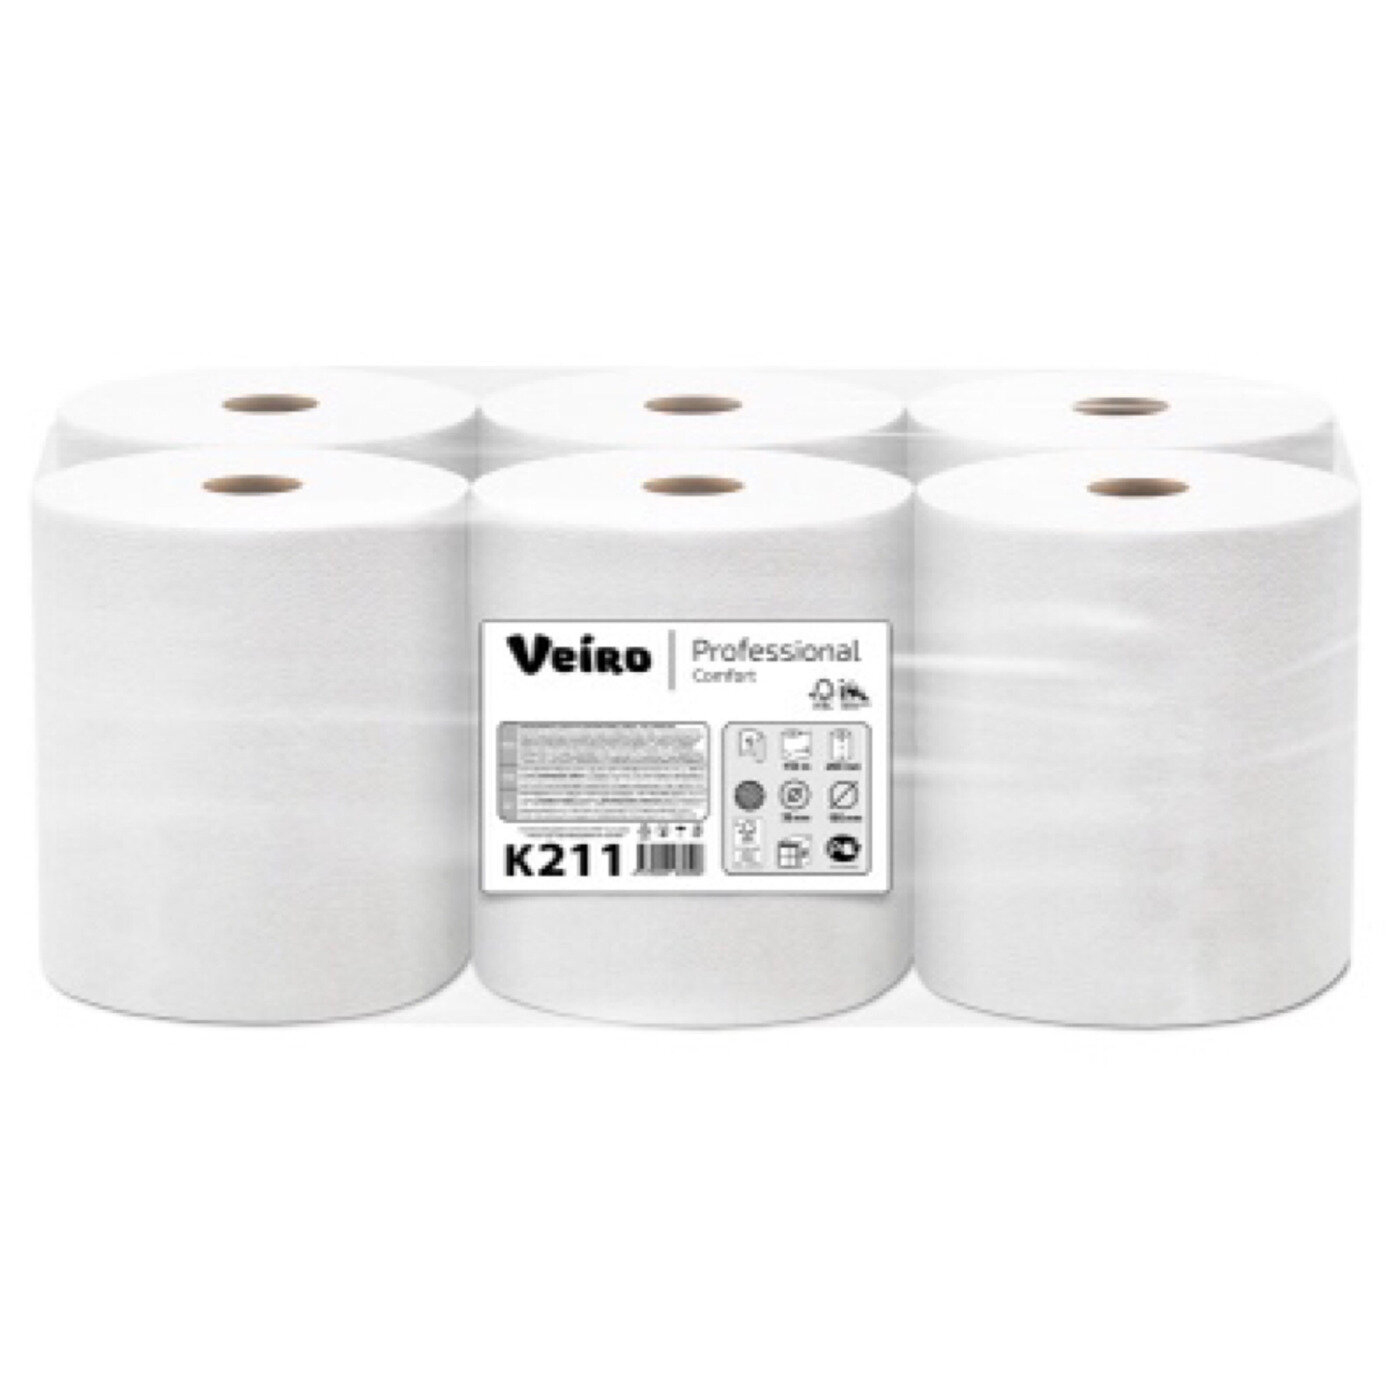 Полотенца бумажные в рулонах Veiro Professional K211, однослойные, 6 рулонов по 150 метров